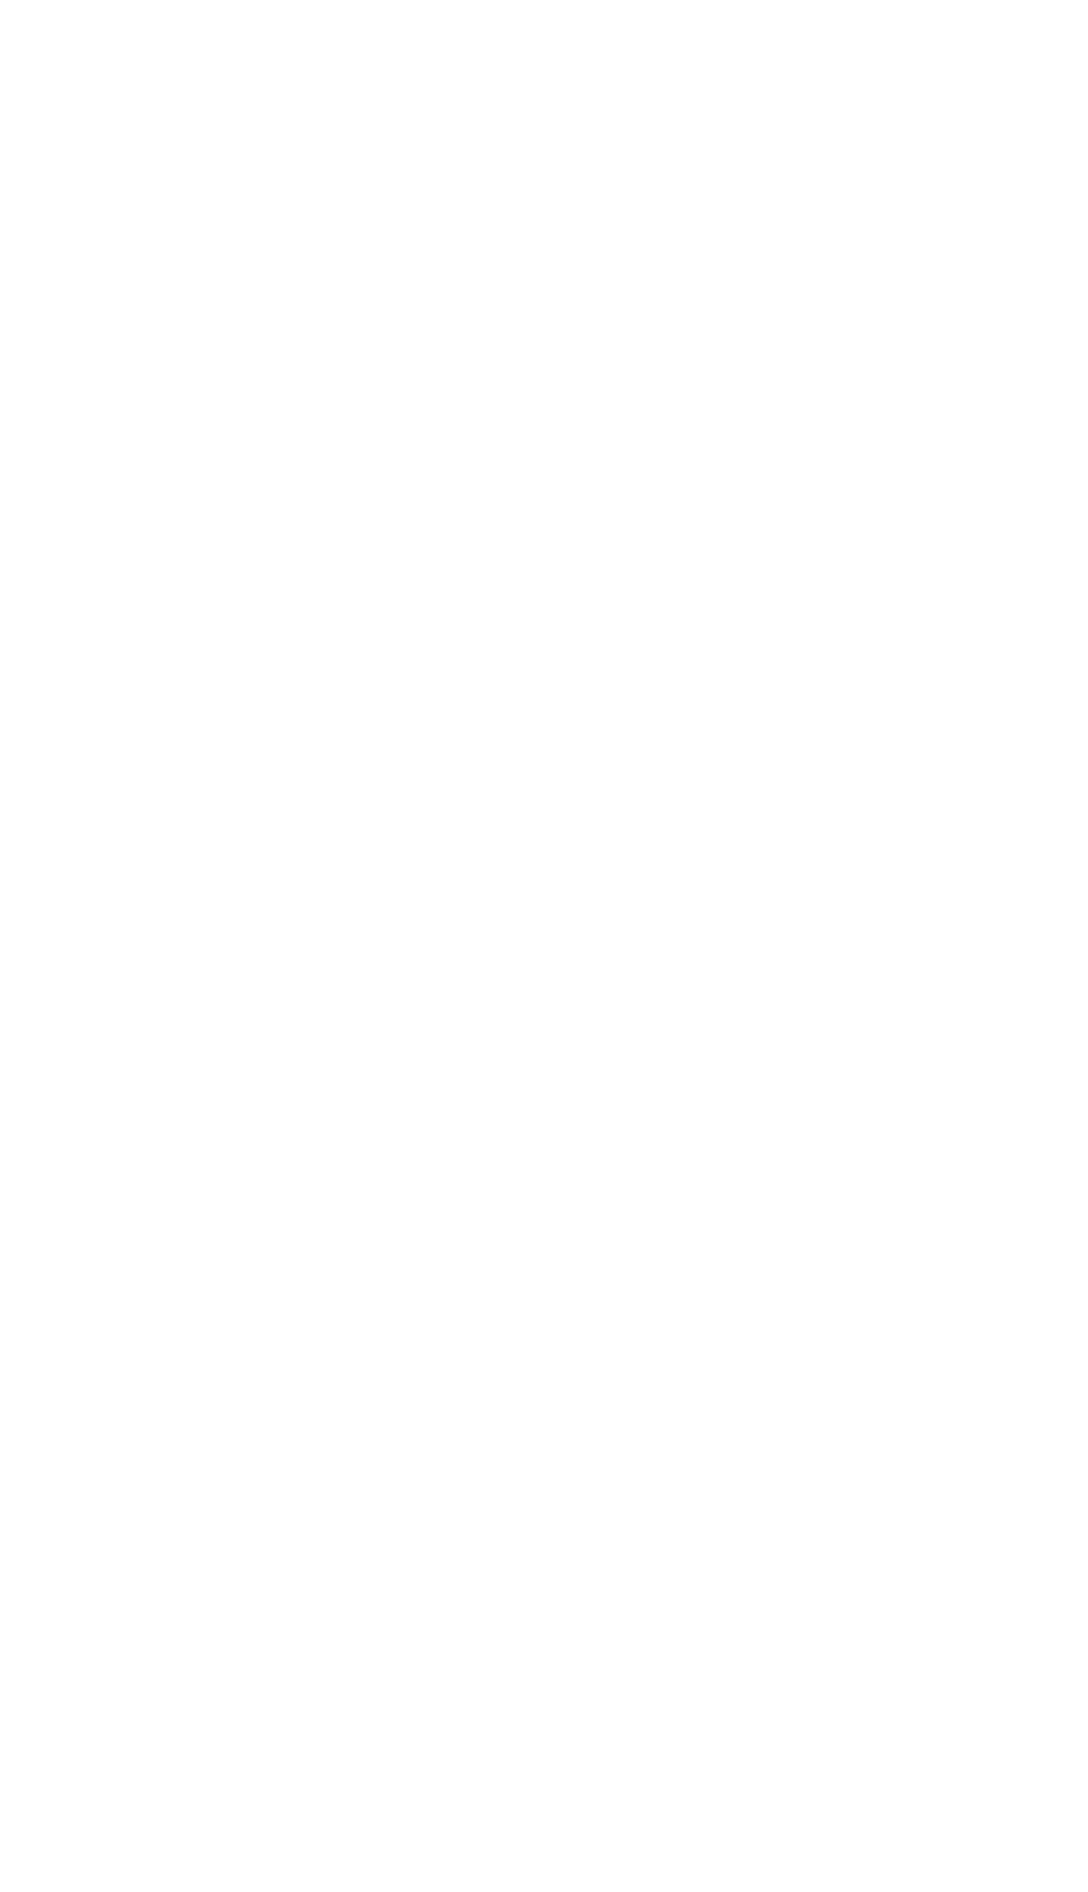 上海亚博(yabo)体育发展有限公司